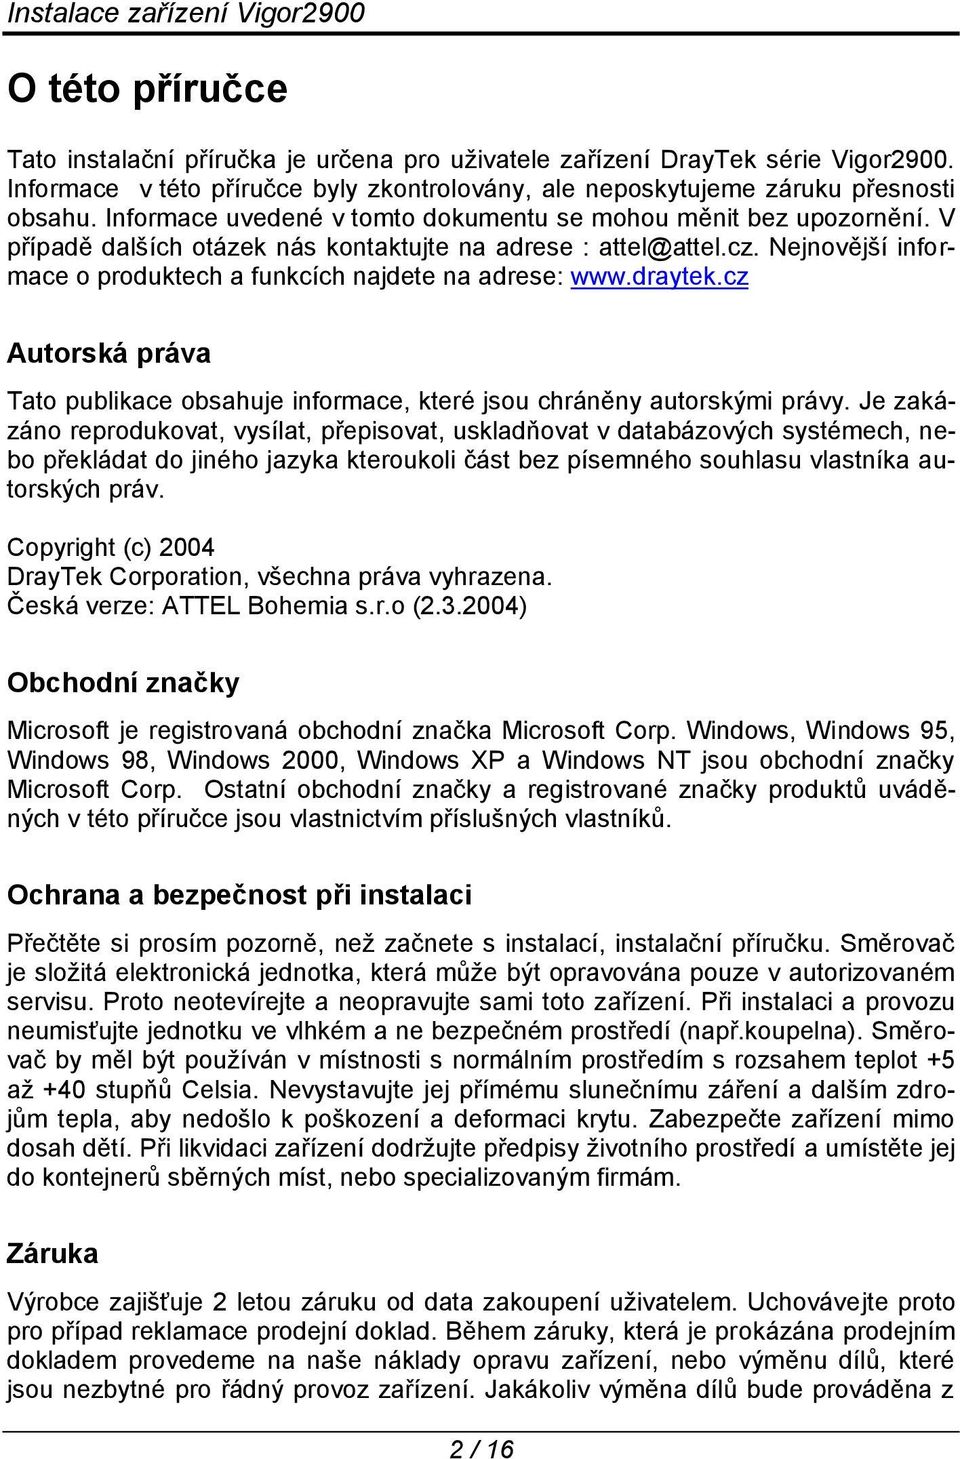 Nejnovější informace o produktech a funkcích najdete na adrese: www.draytek.cz Autorská práva Tato publikace obsahuje informace, které jsou chráněny autorskými právy.